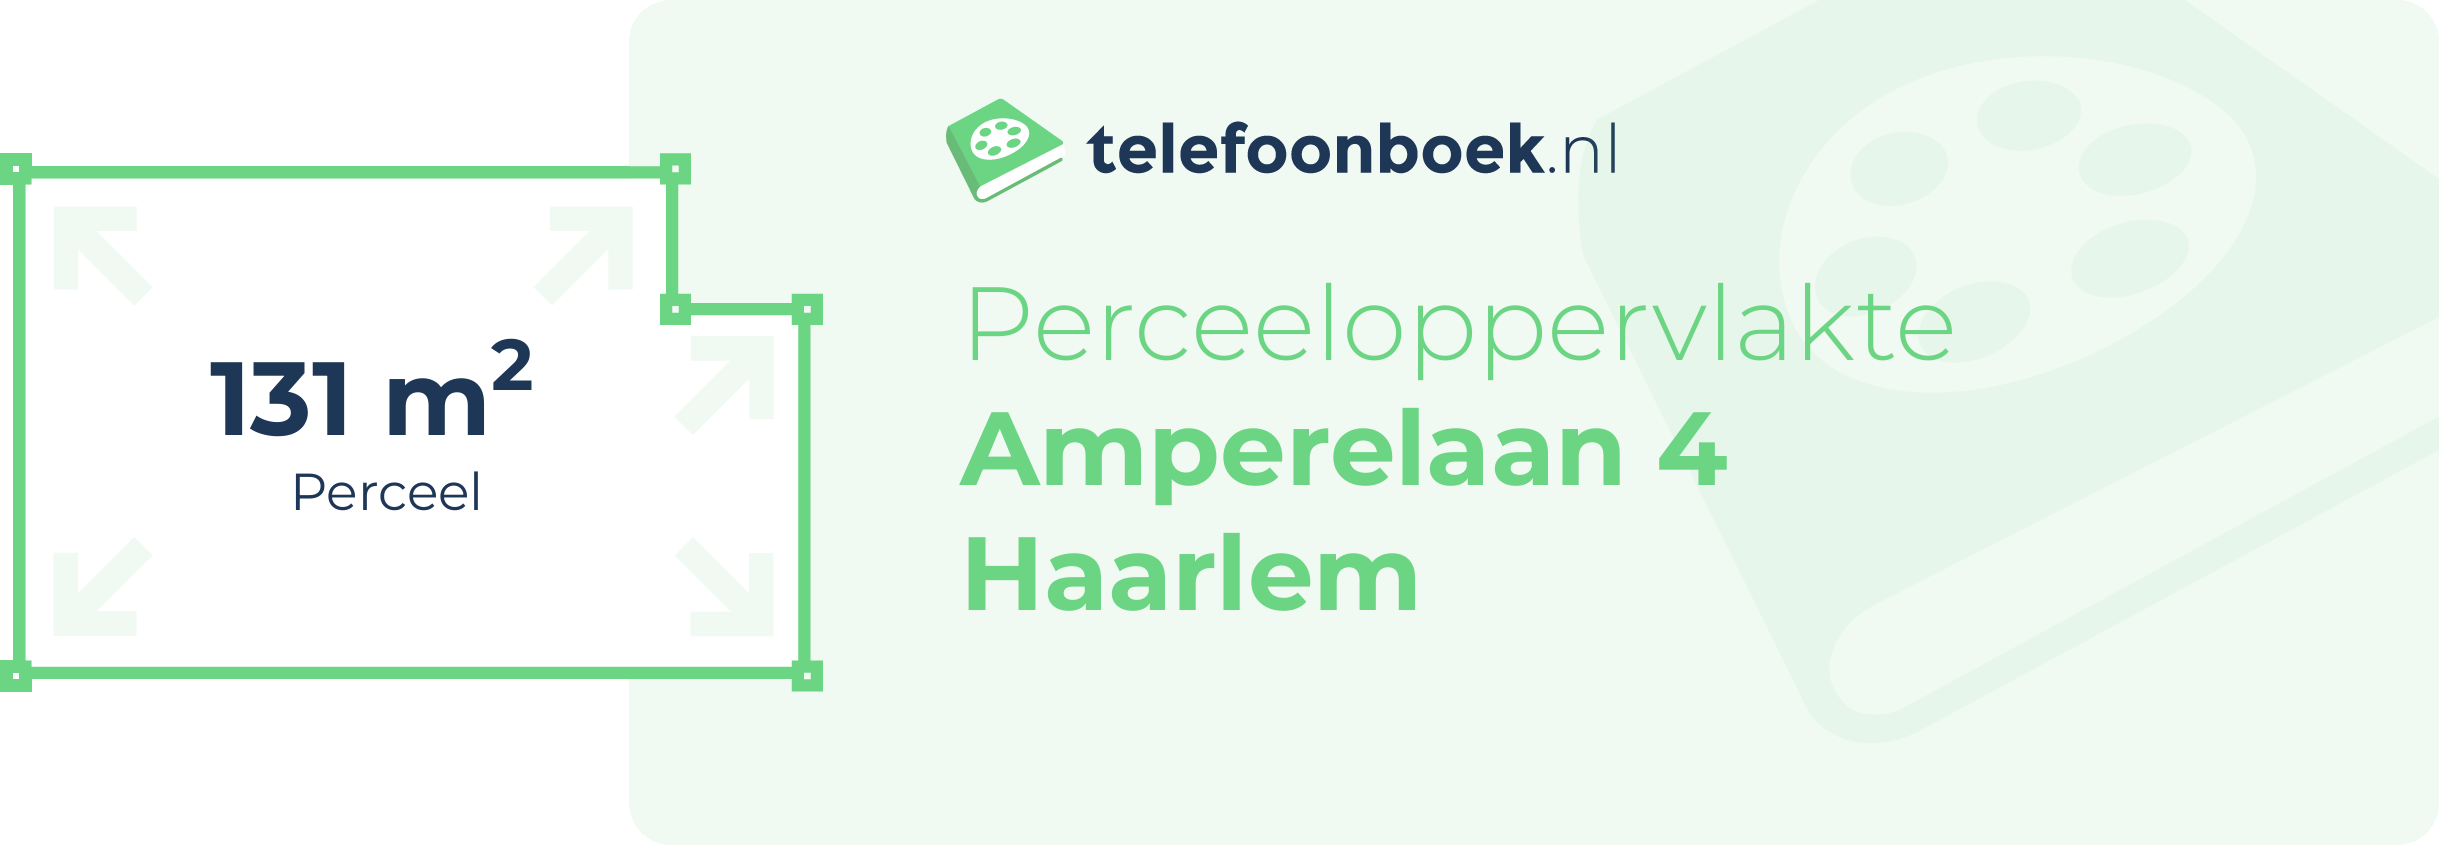 Perceeloppervlakte Amperelaan 4 Haarlem